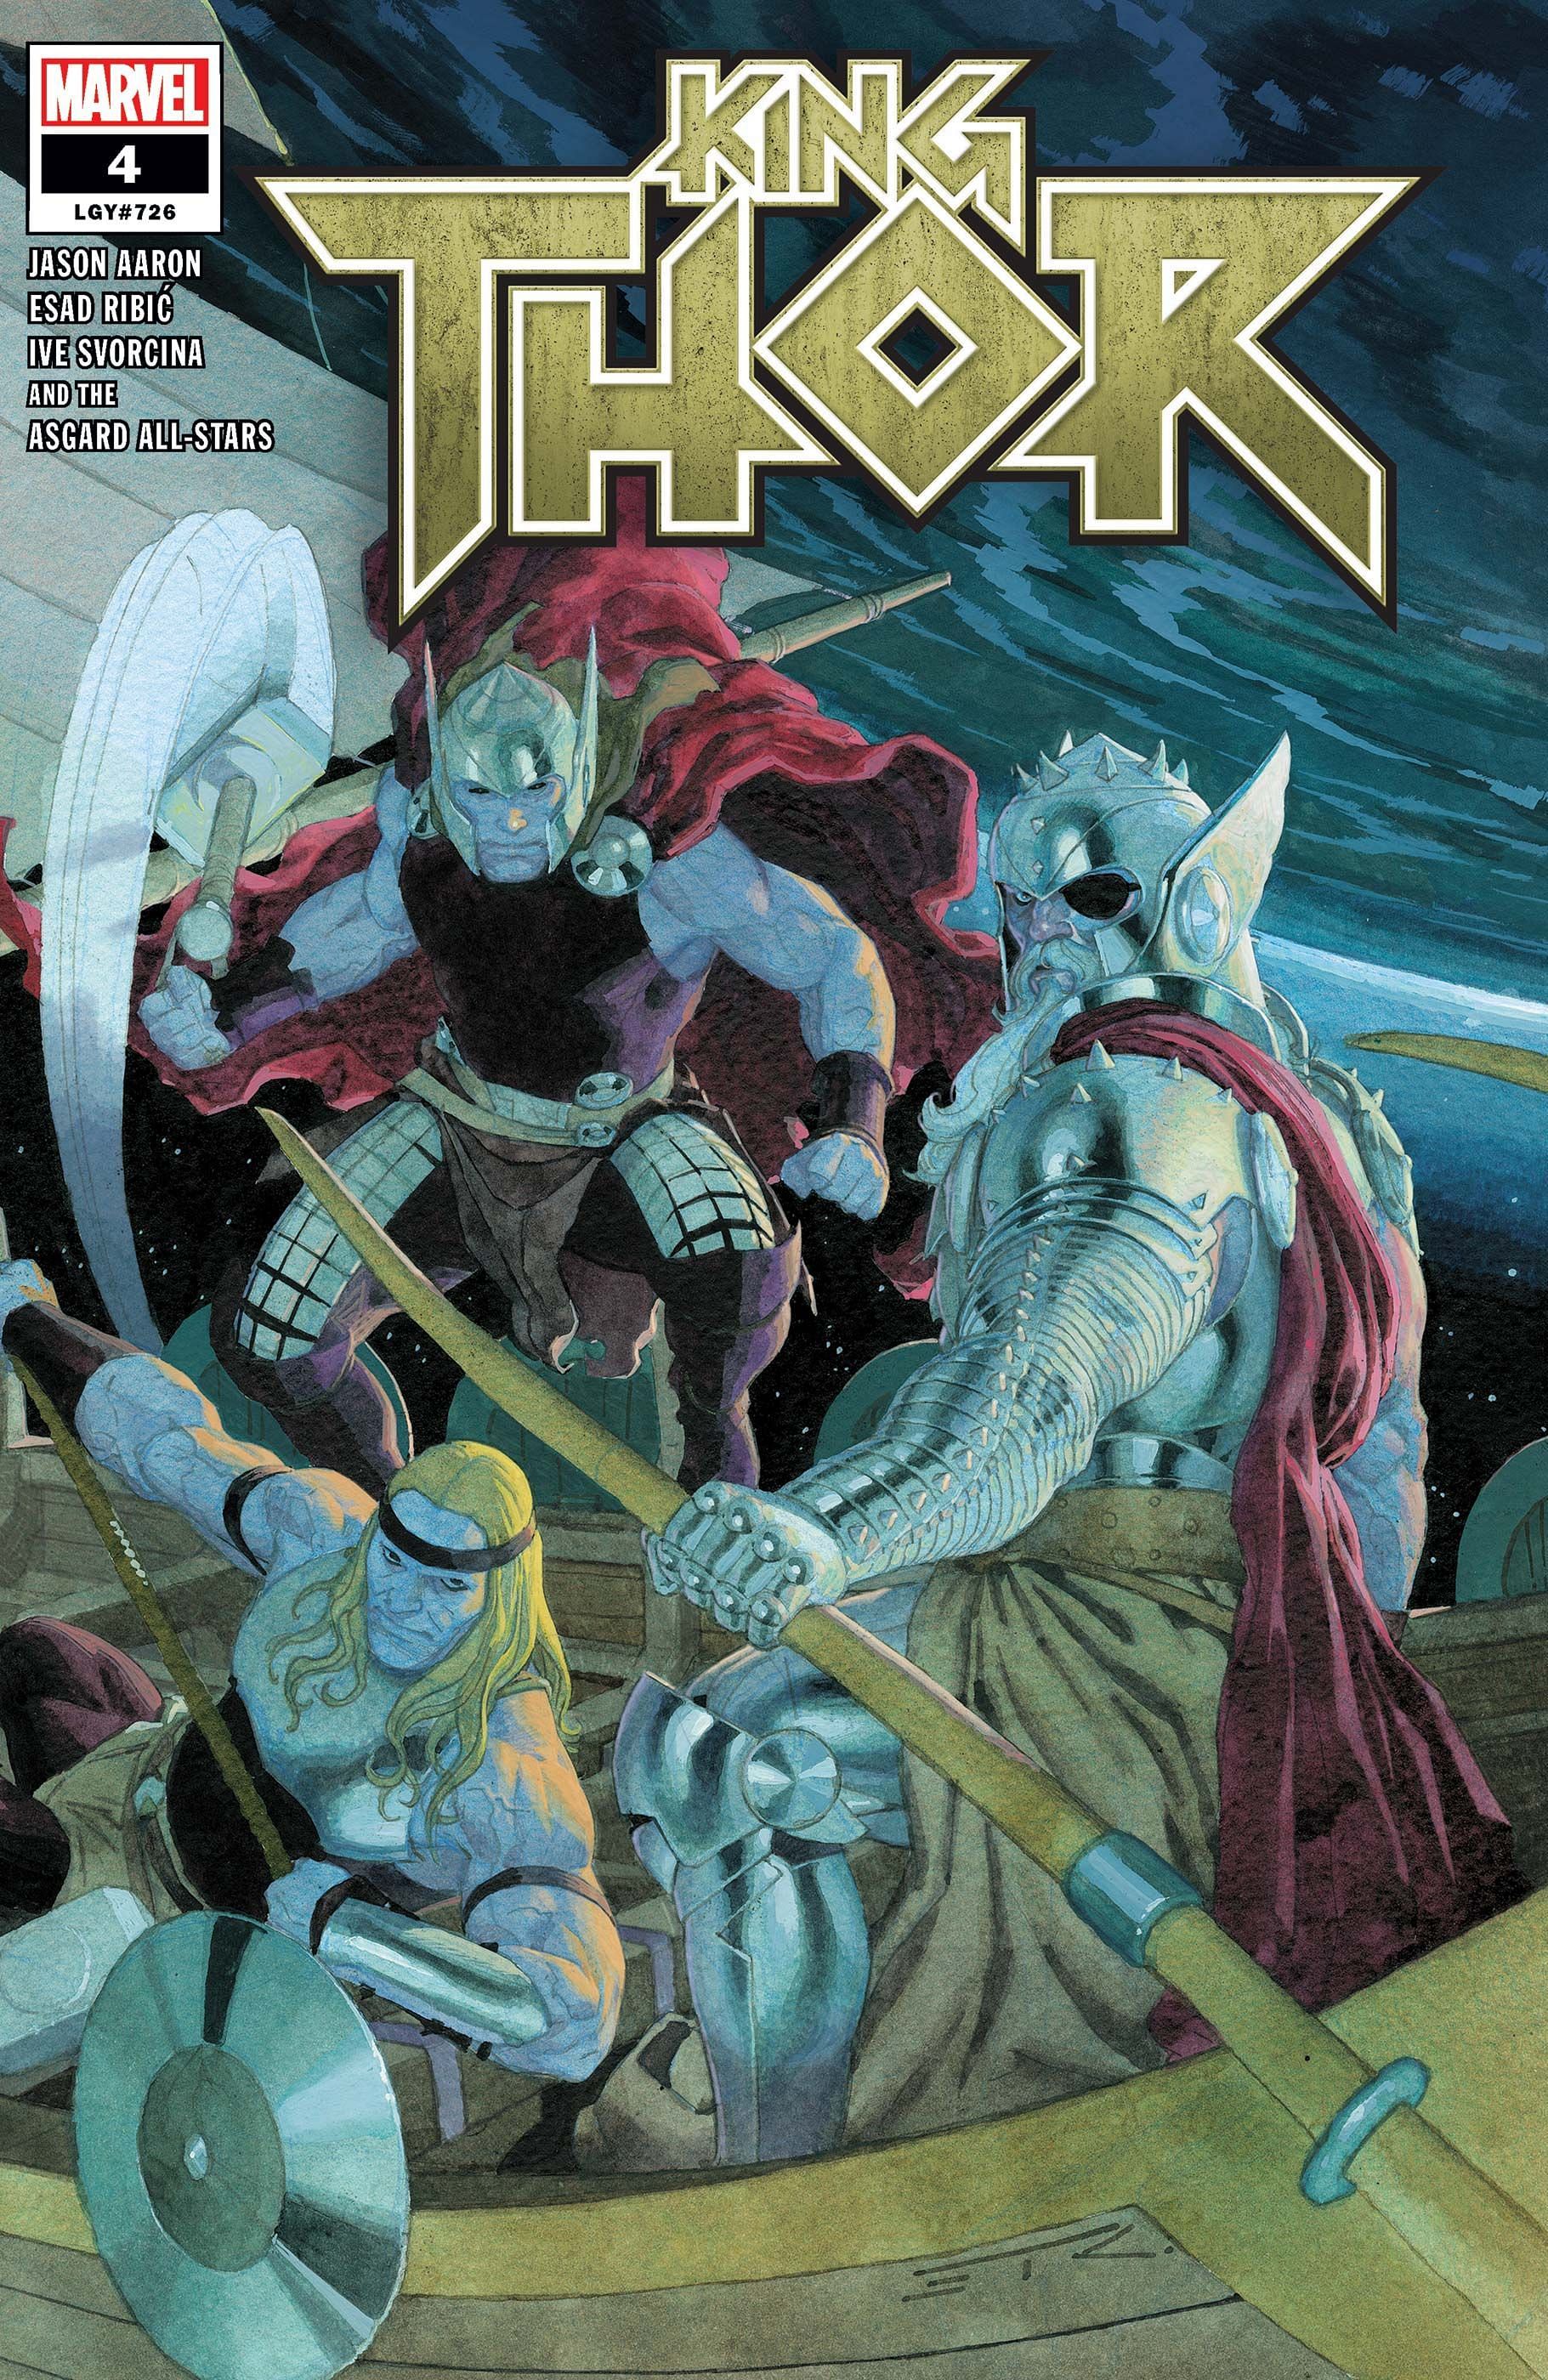 King Thor #4 cover (Image via Marvel Comics)